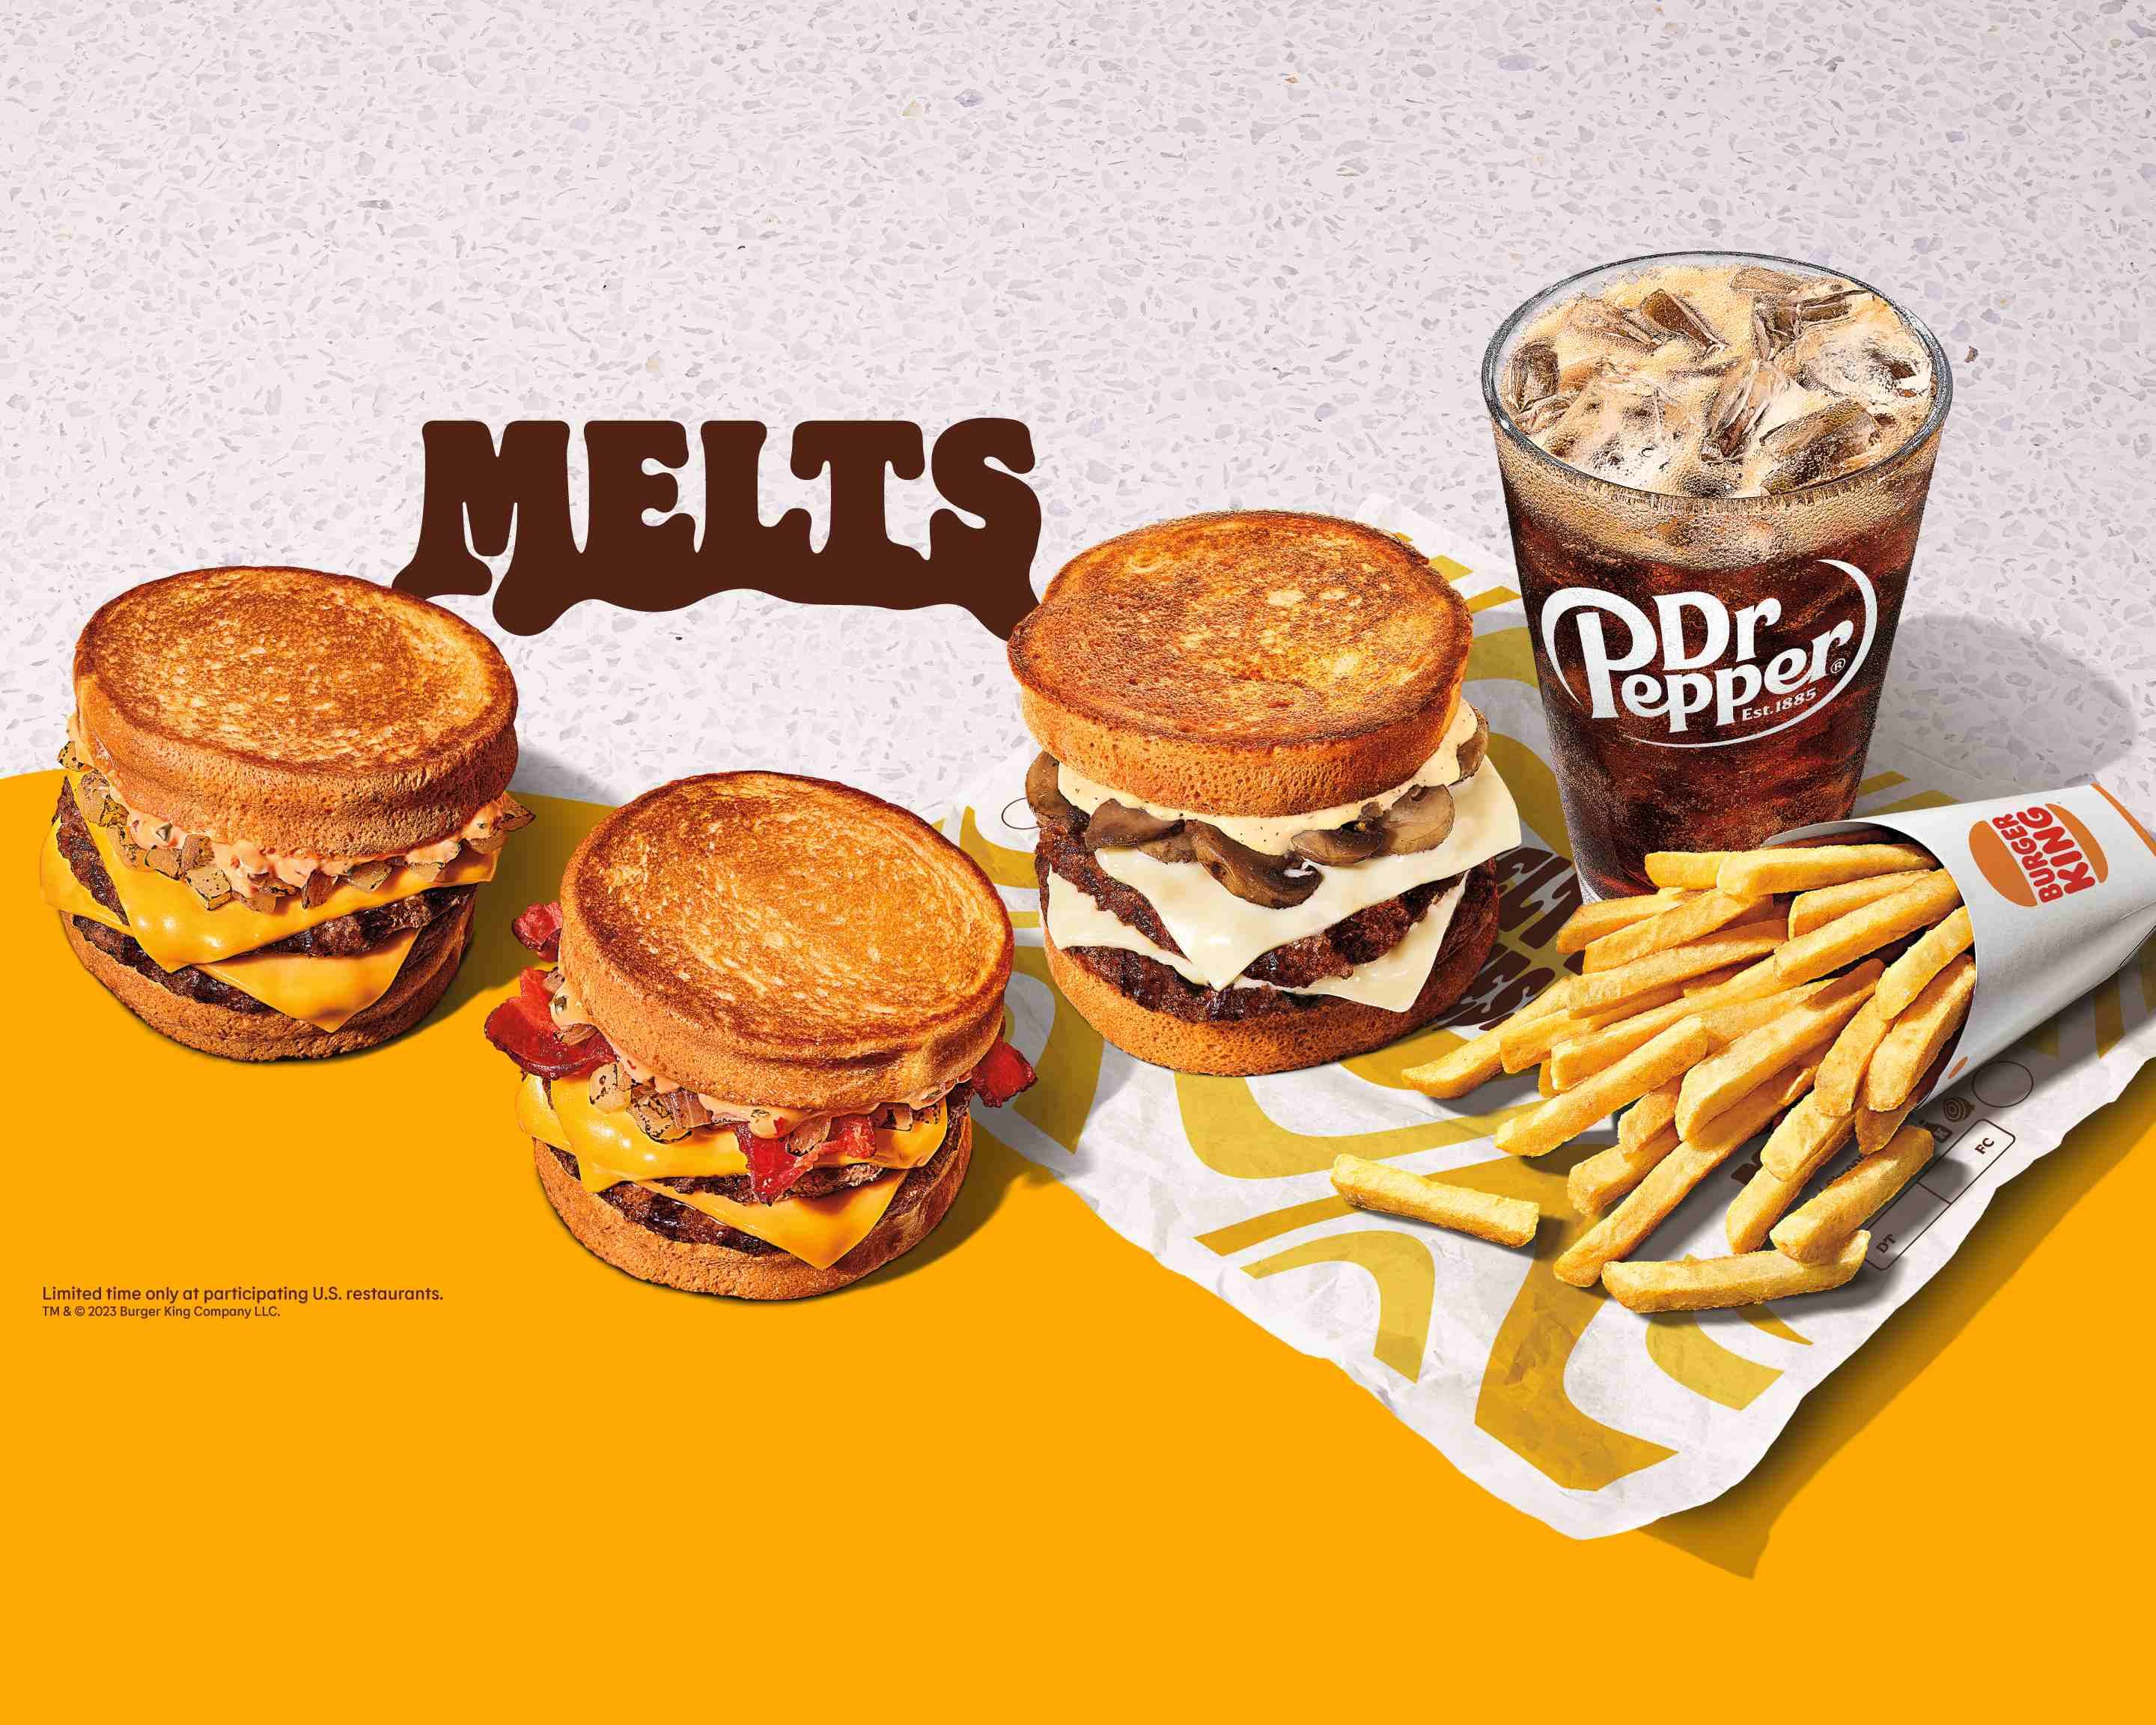 MrBeast Burger on X: more mrbeast burgers at a location near u 🔥 do u see  ur city? 🍔  / X